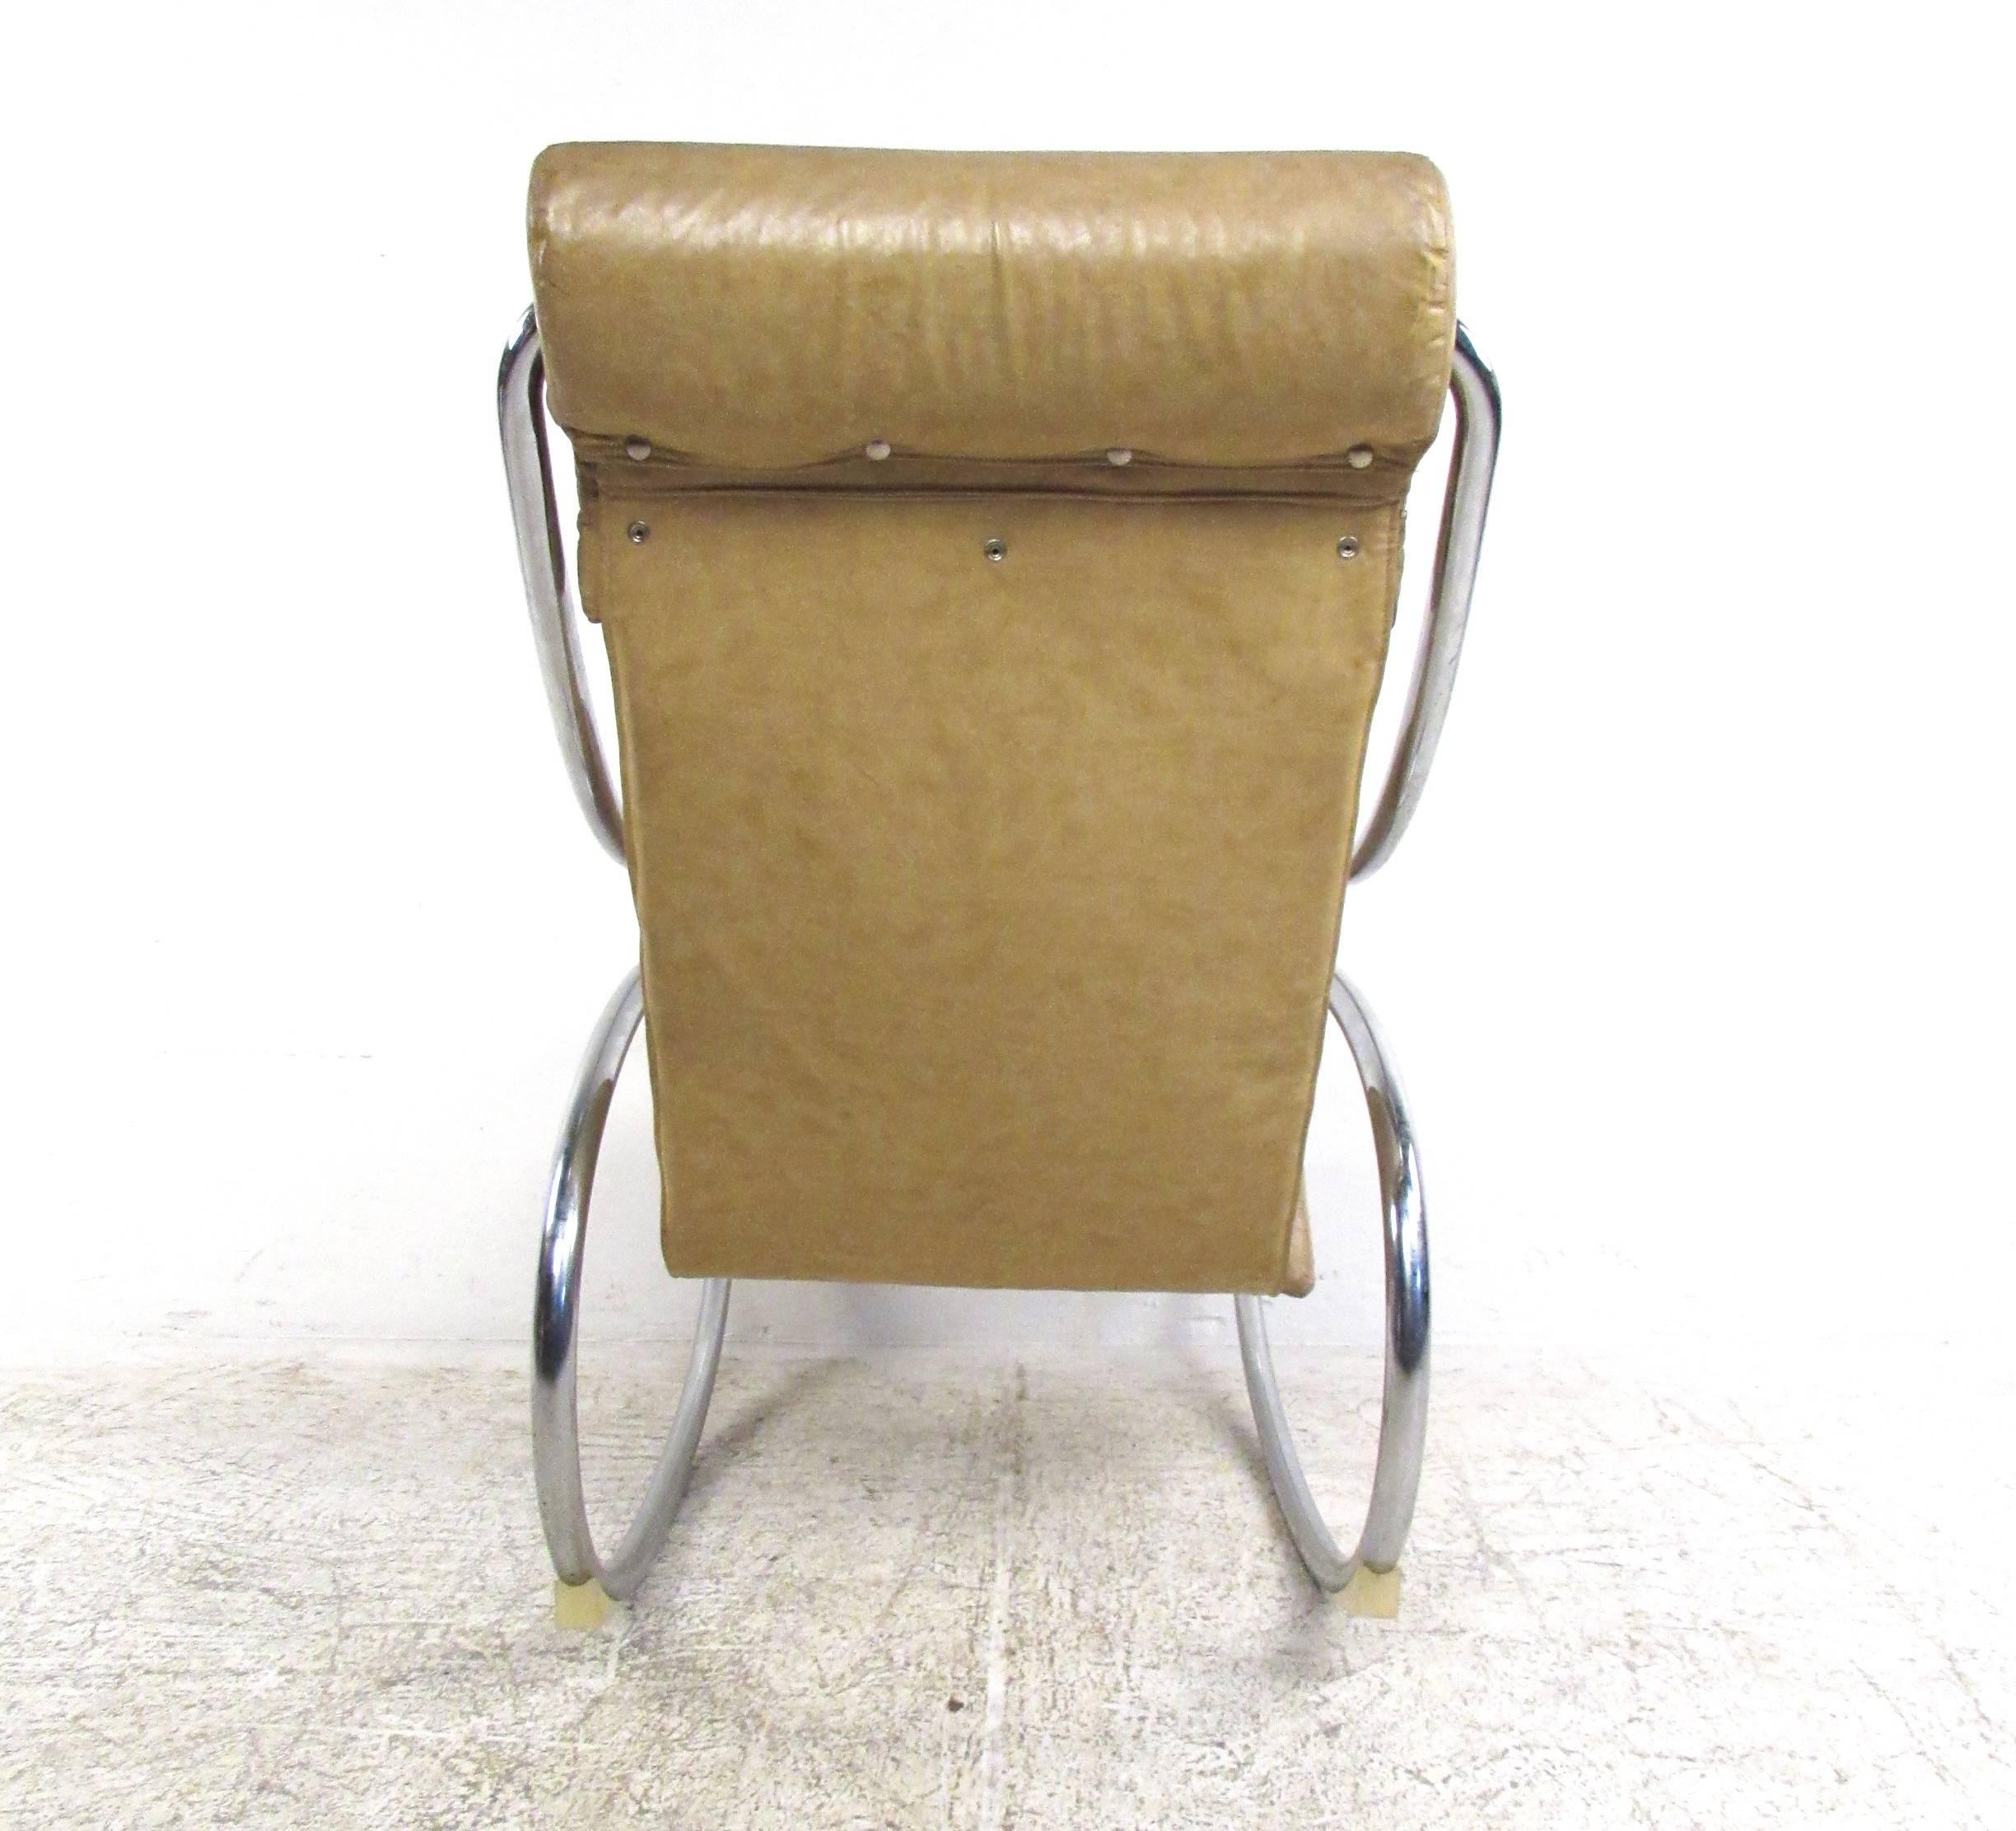 chrome tubular chair